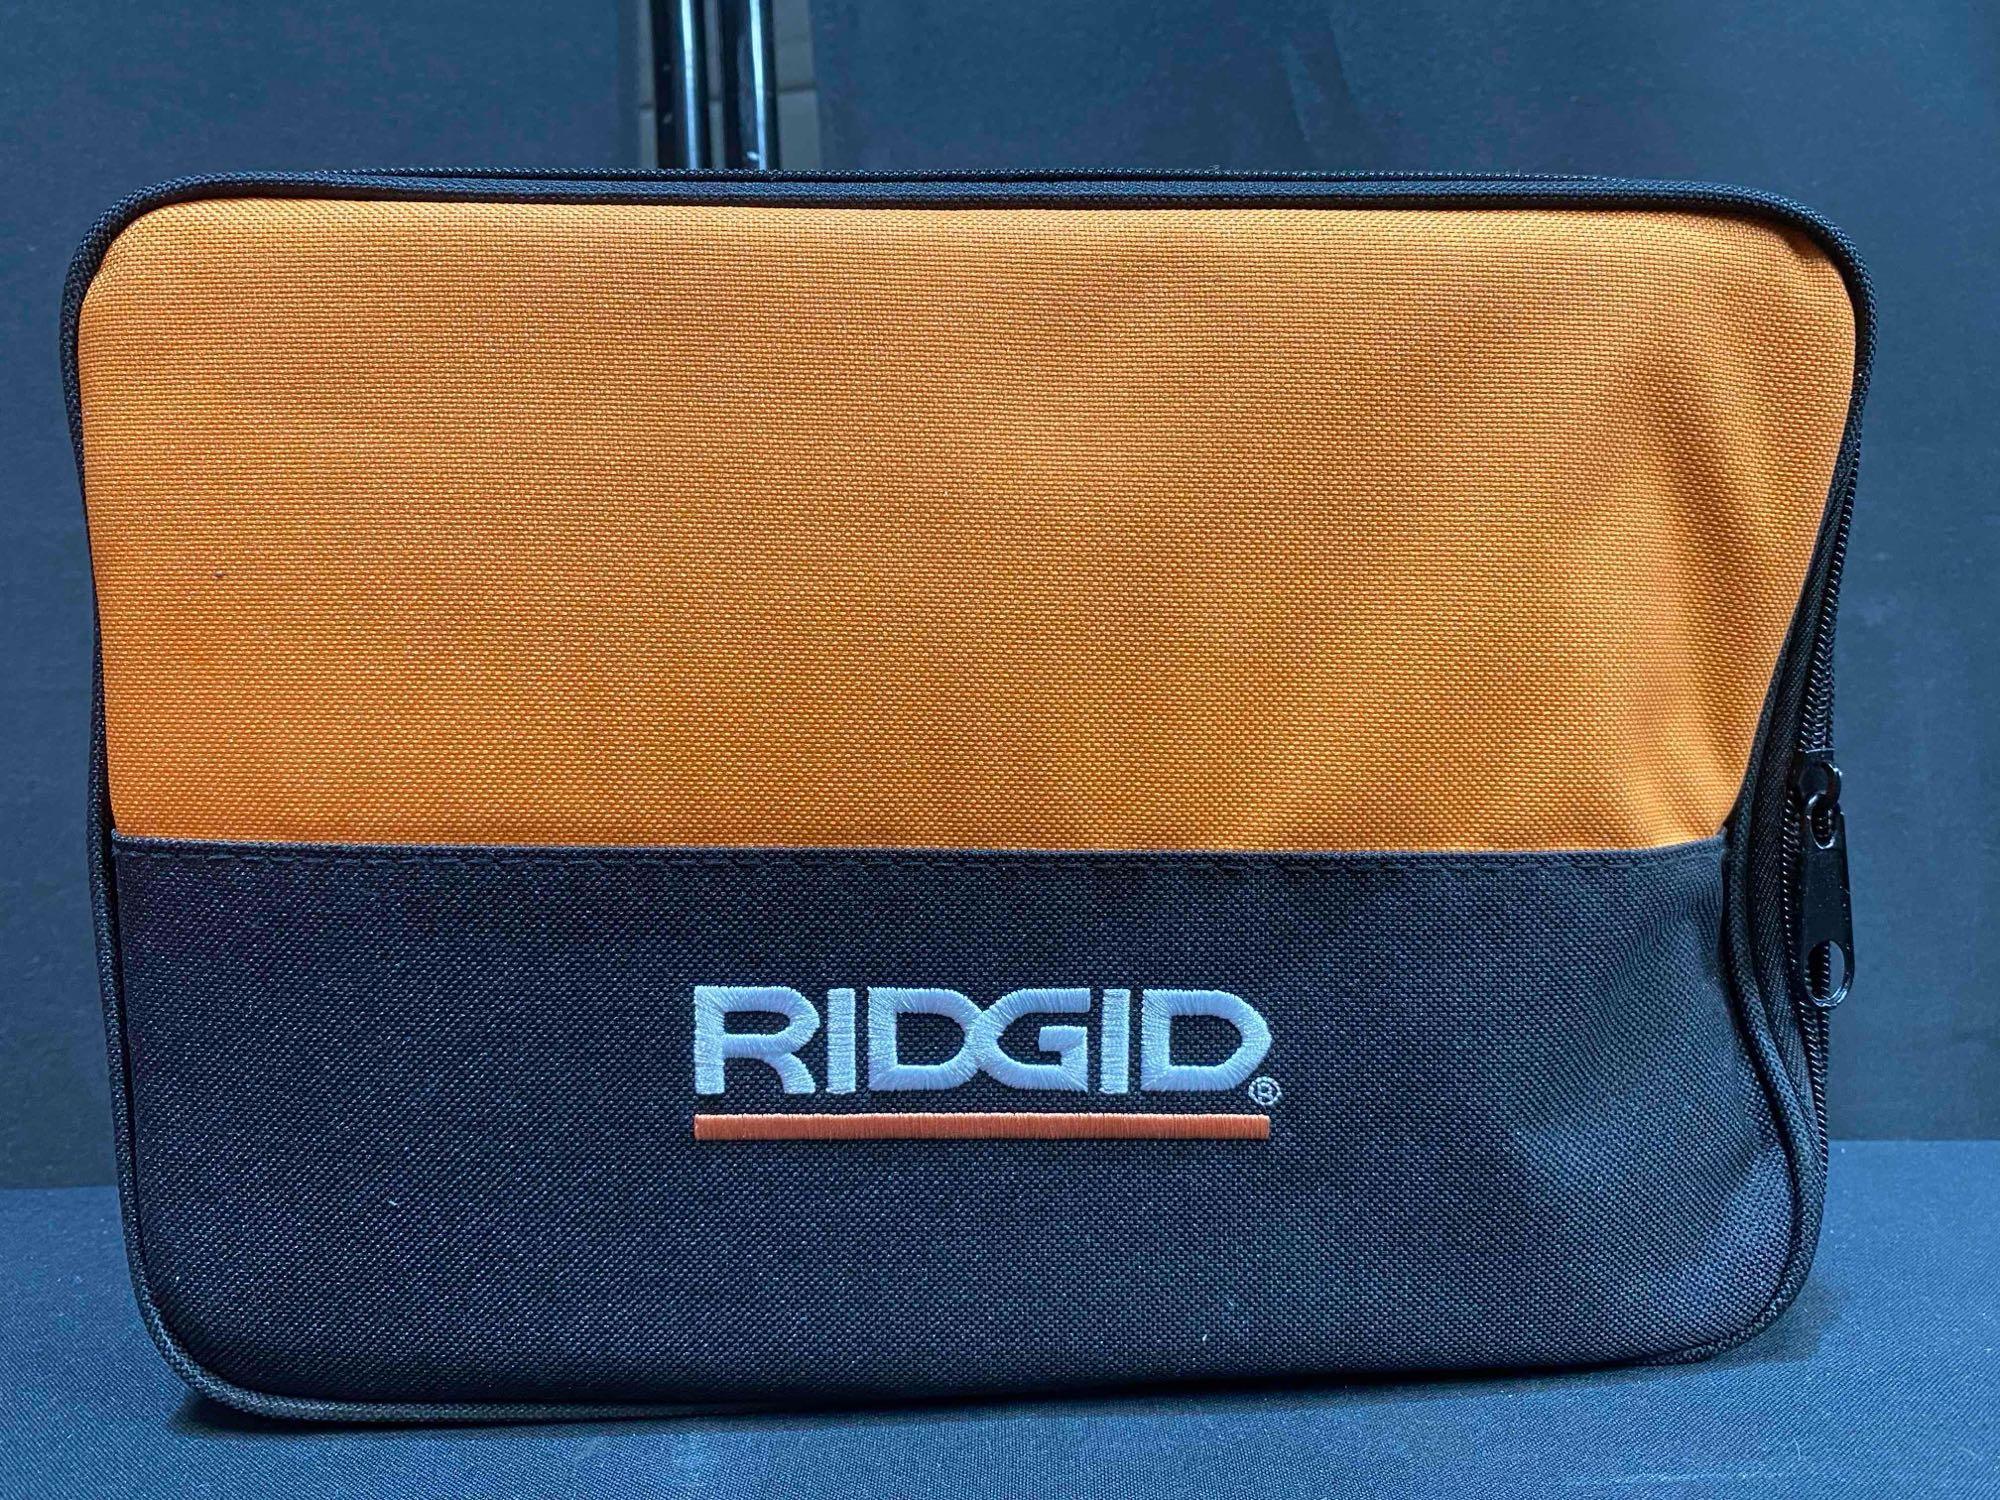 RIDGID 18V 1/2 IN DRILL/DRIVER KIT